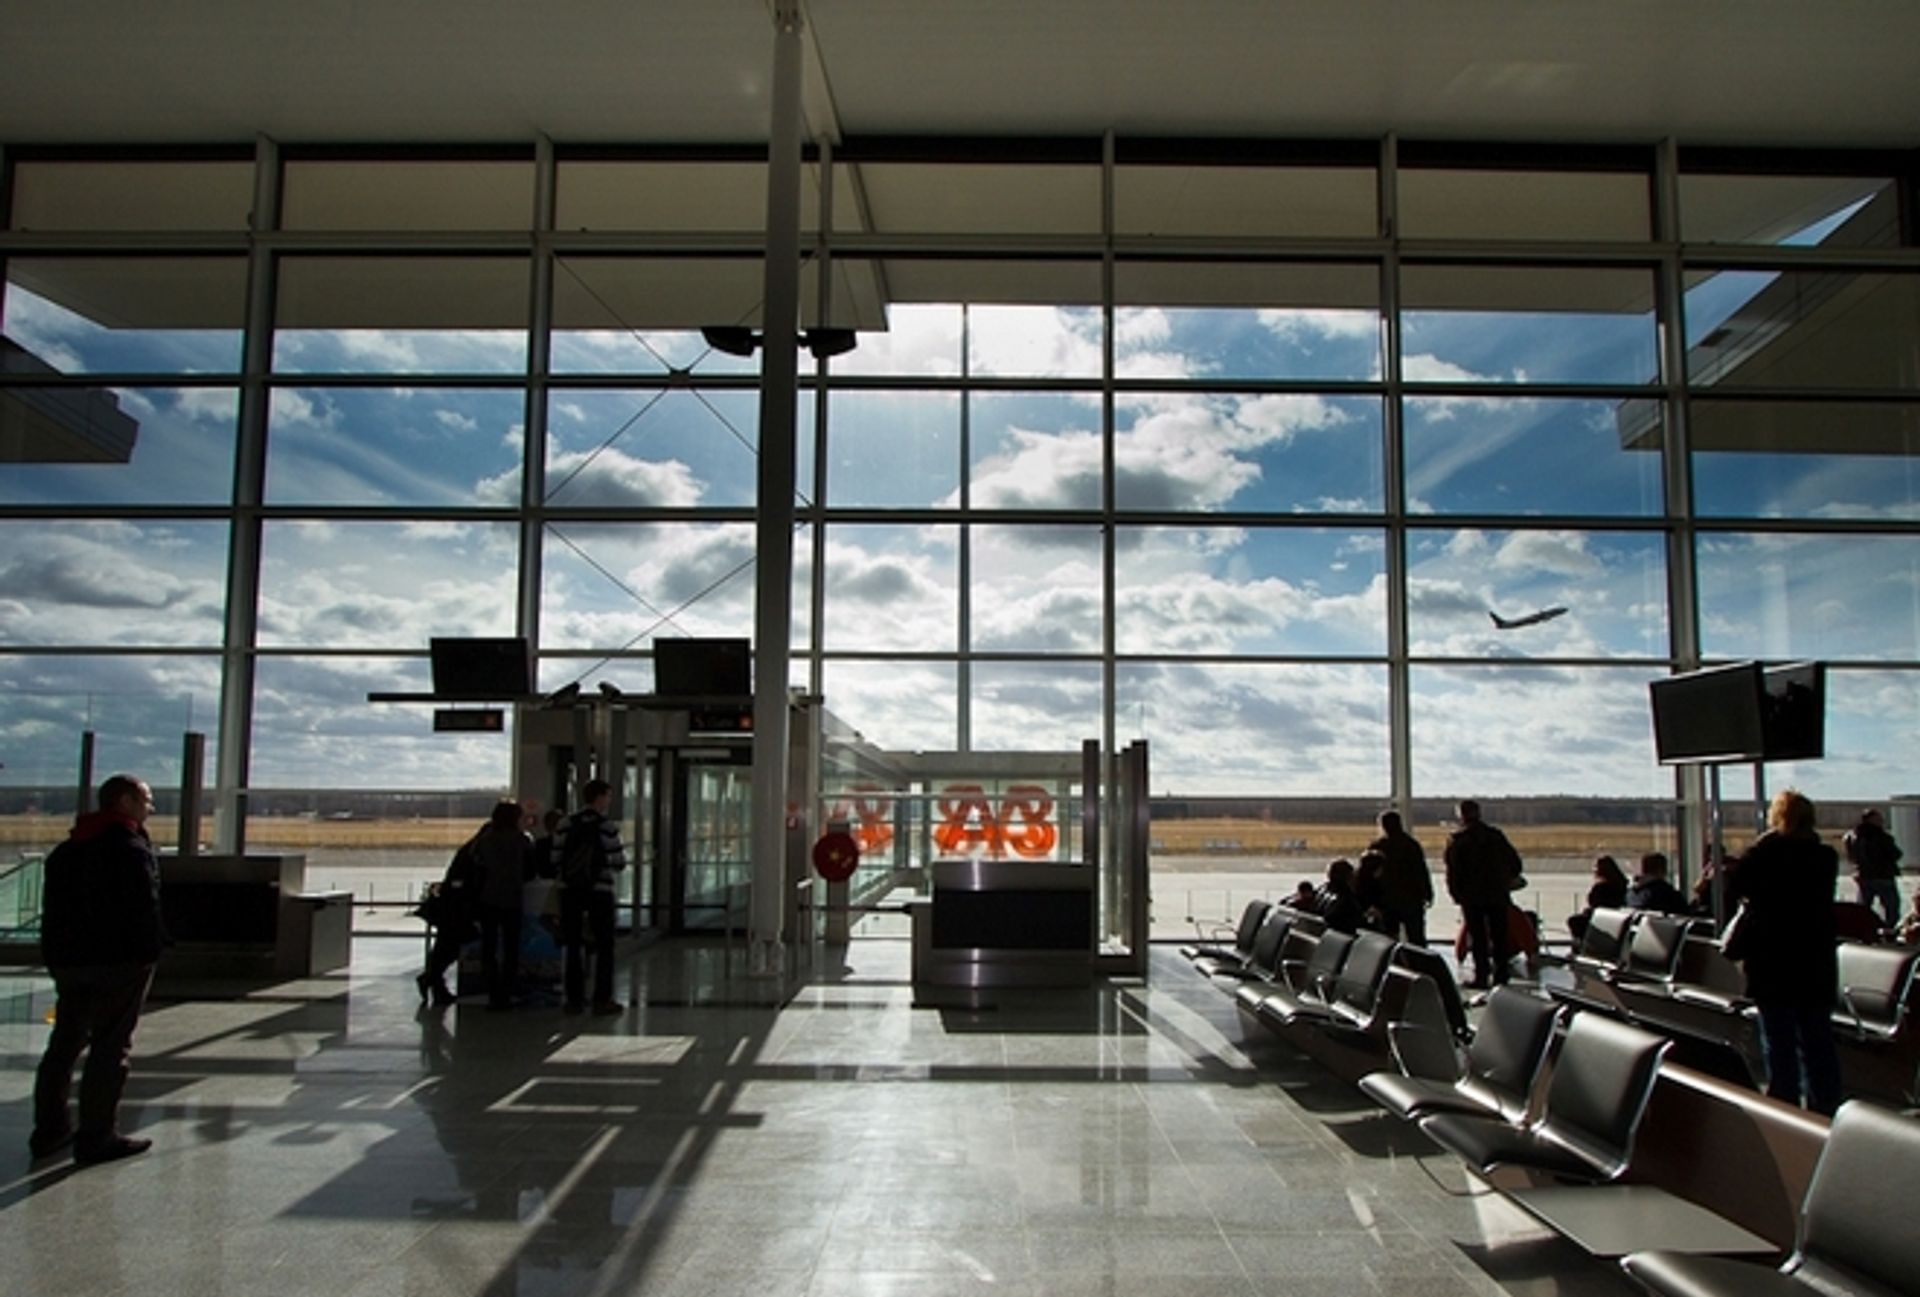  1,2 mln pasażerów w pół roku odwiedziło nowy terminal lotniczy